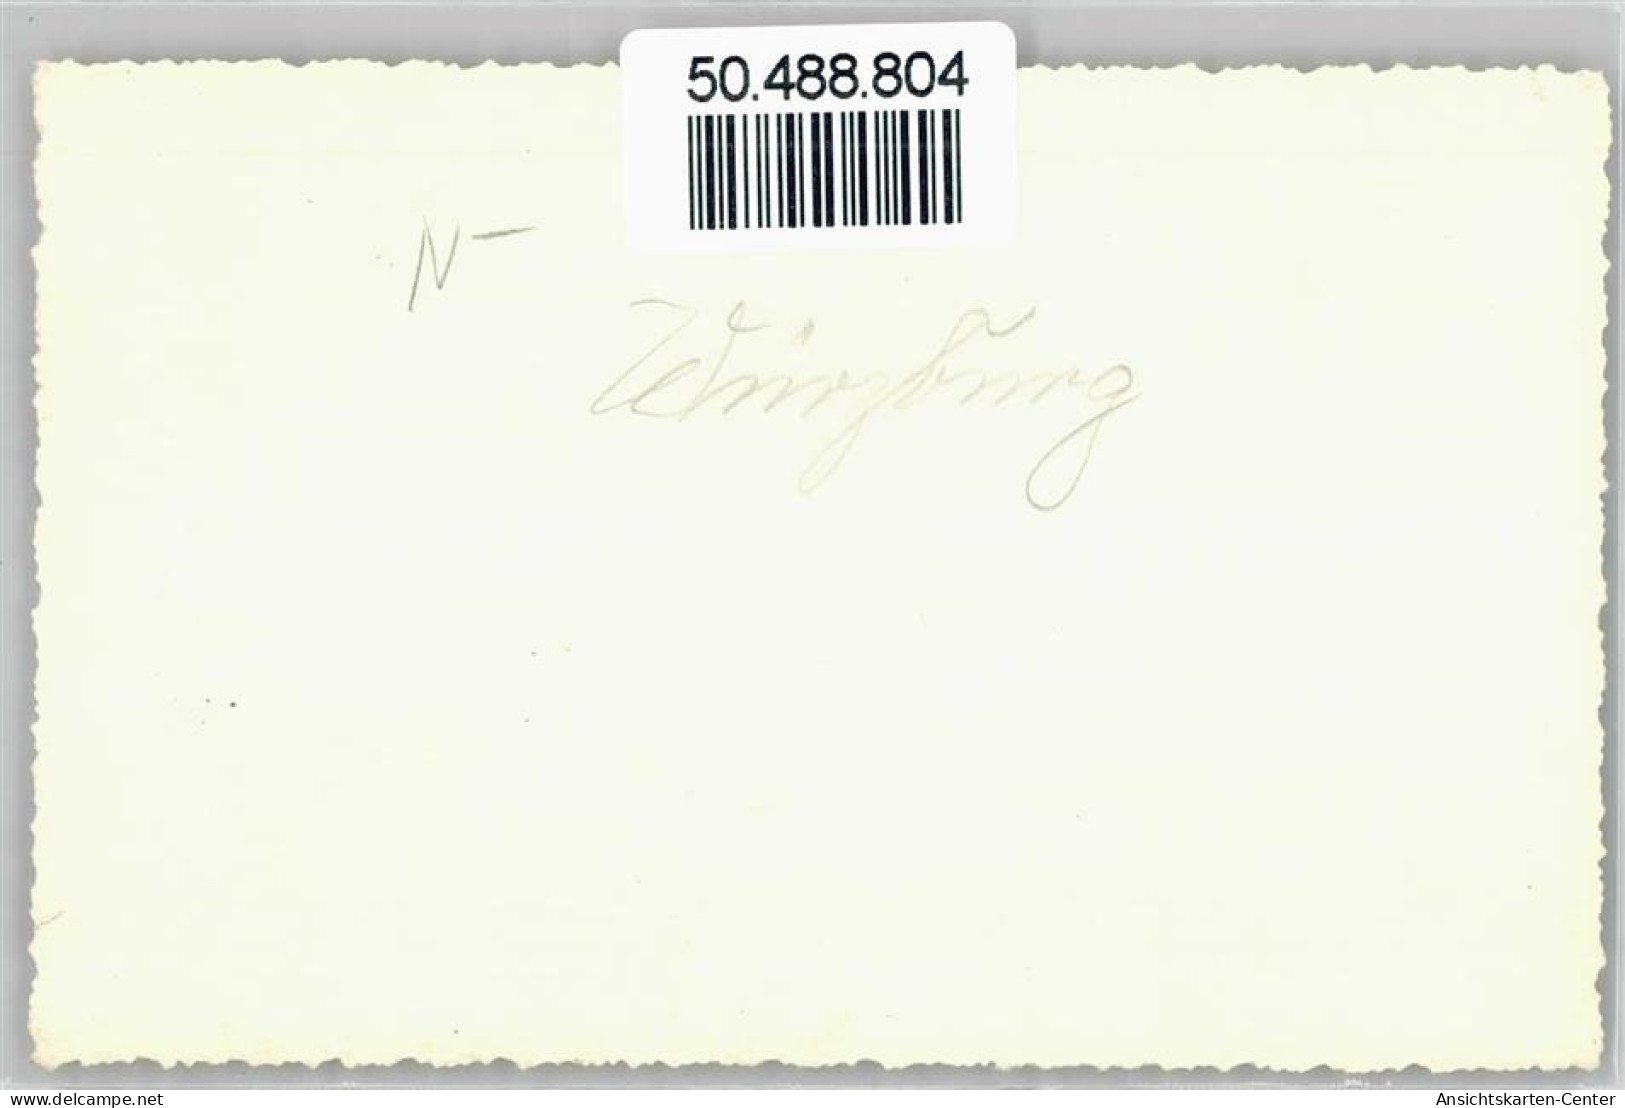 50488804 - Wuerzburg - Würzburg